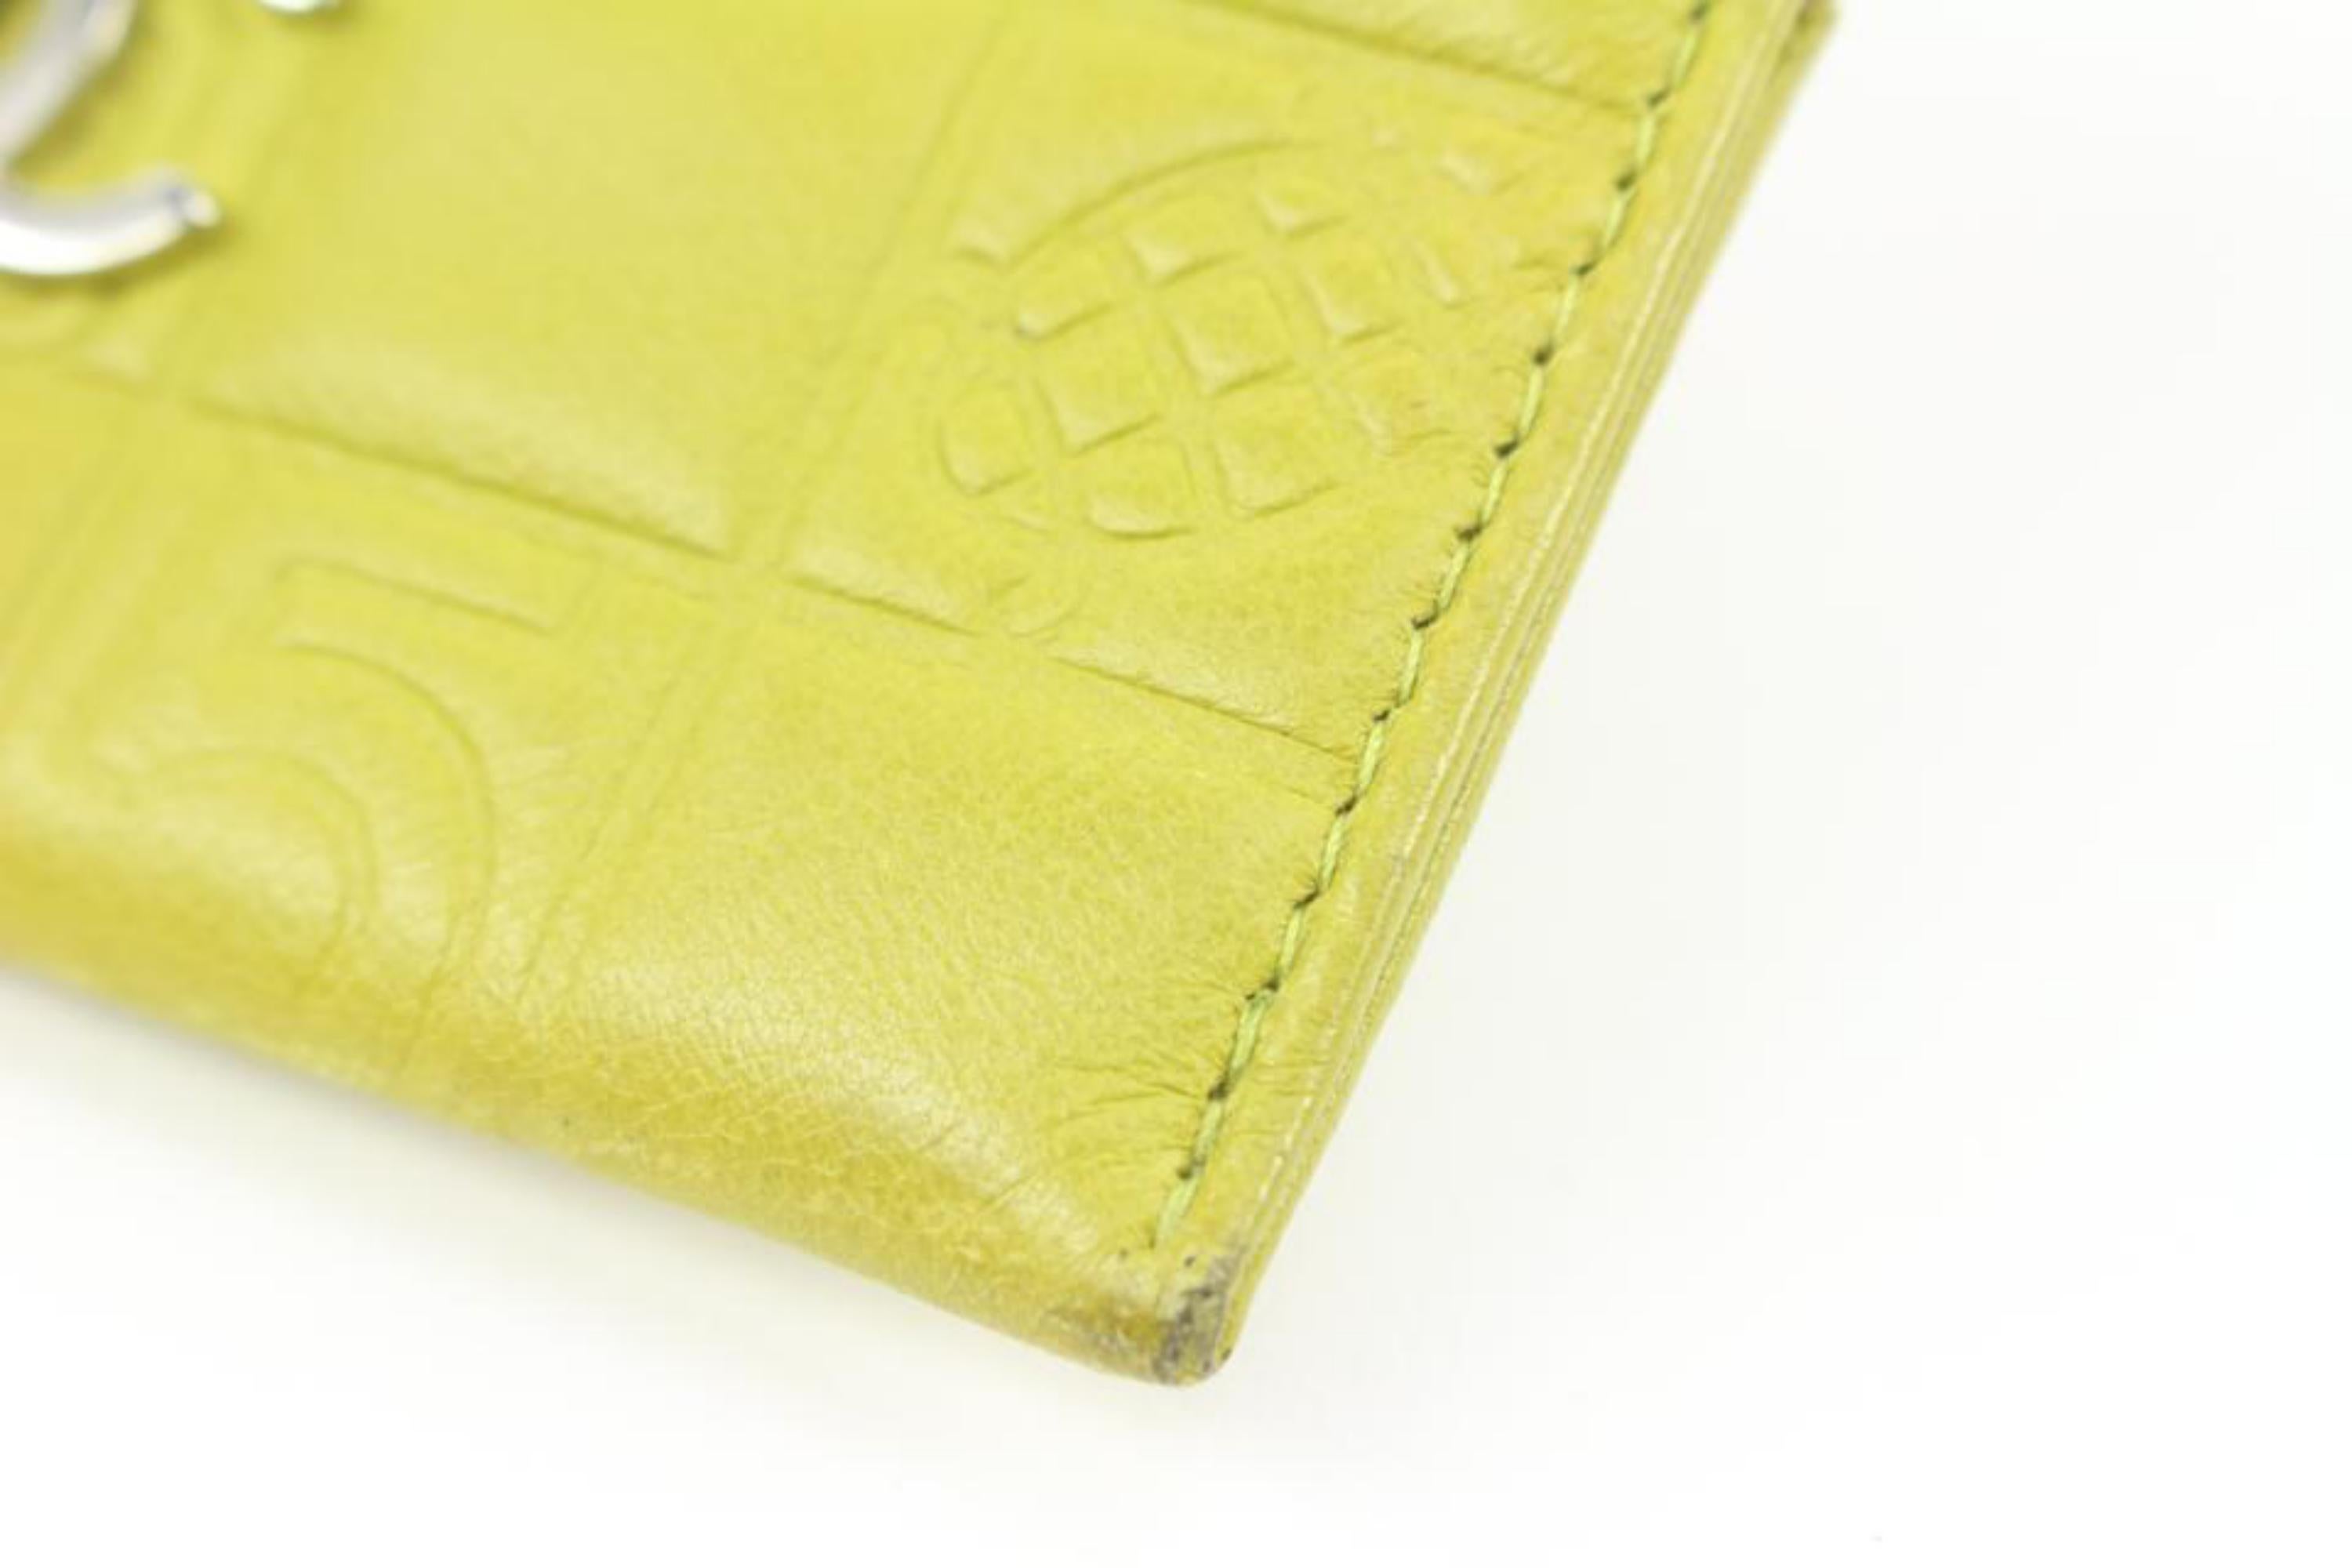 Portefeuille porte-cartes chocolat matelassé vert citron de Chanel 52ck322s
Numéro de date/numéro de série : 8643173
Fabriqué en : France
Mesures : Longueur :  Largeur de 4